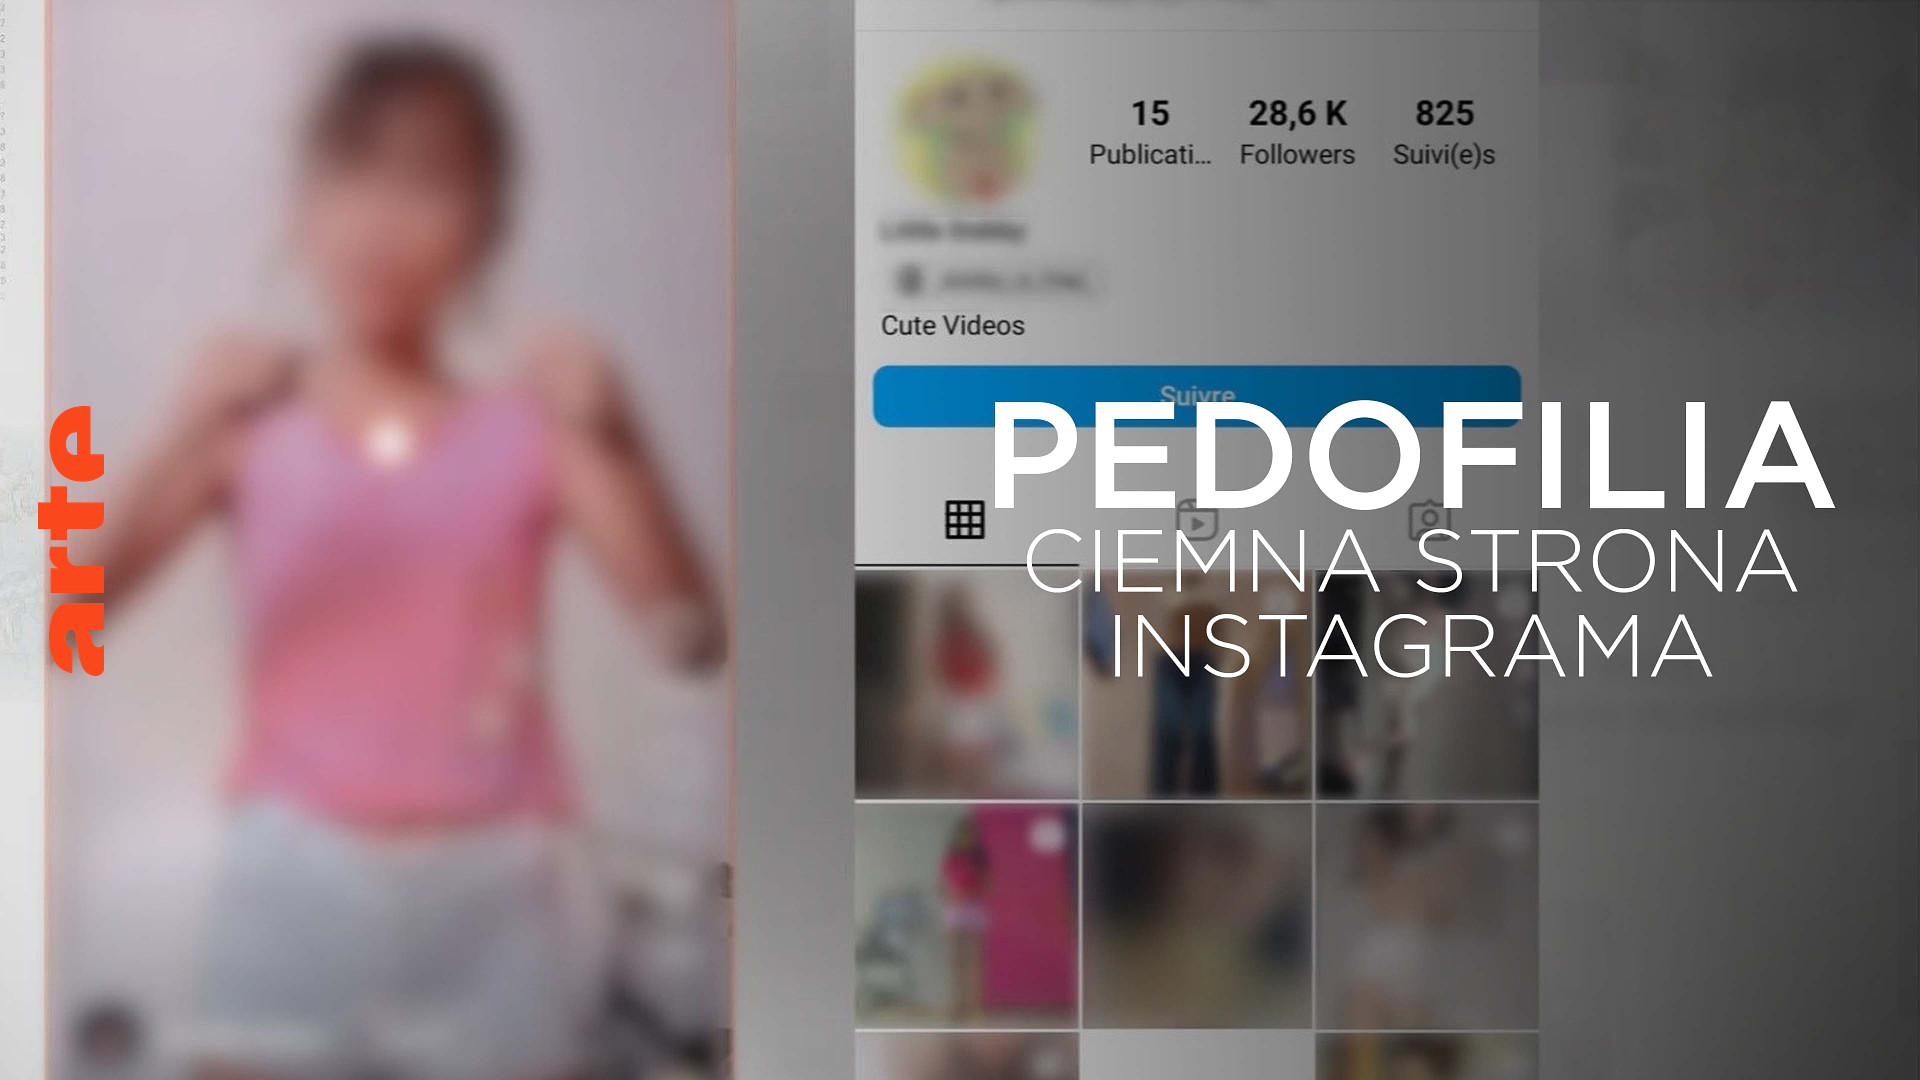 Pedofilia - Ciemna strona instagrama - Obejrzyj cały dokument | ARTE po polsku